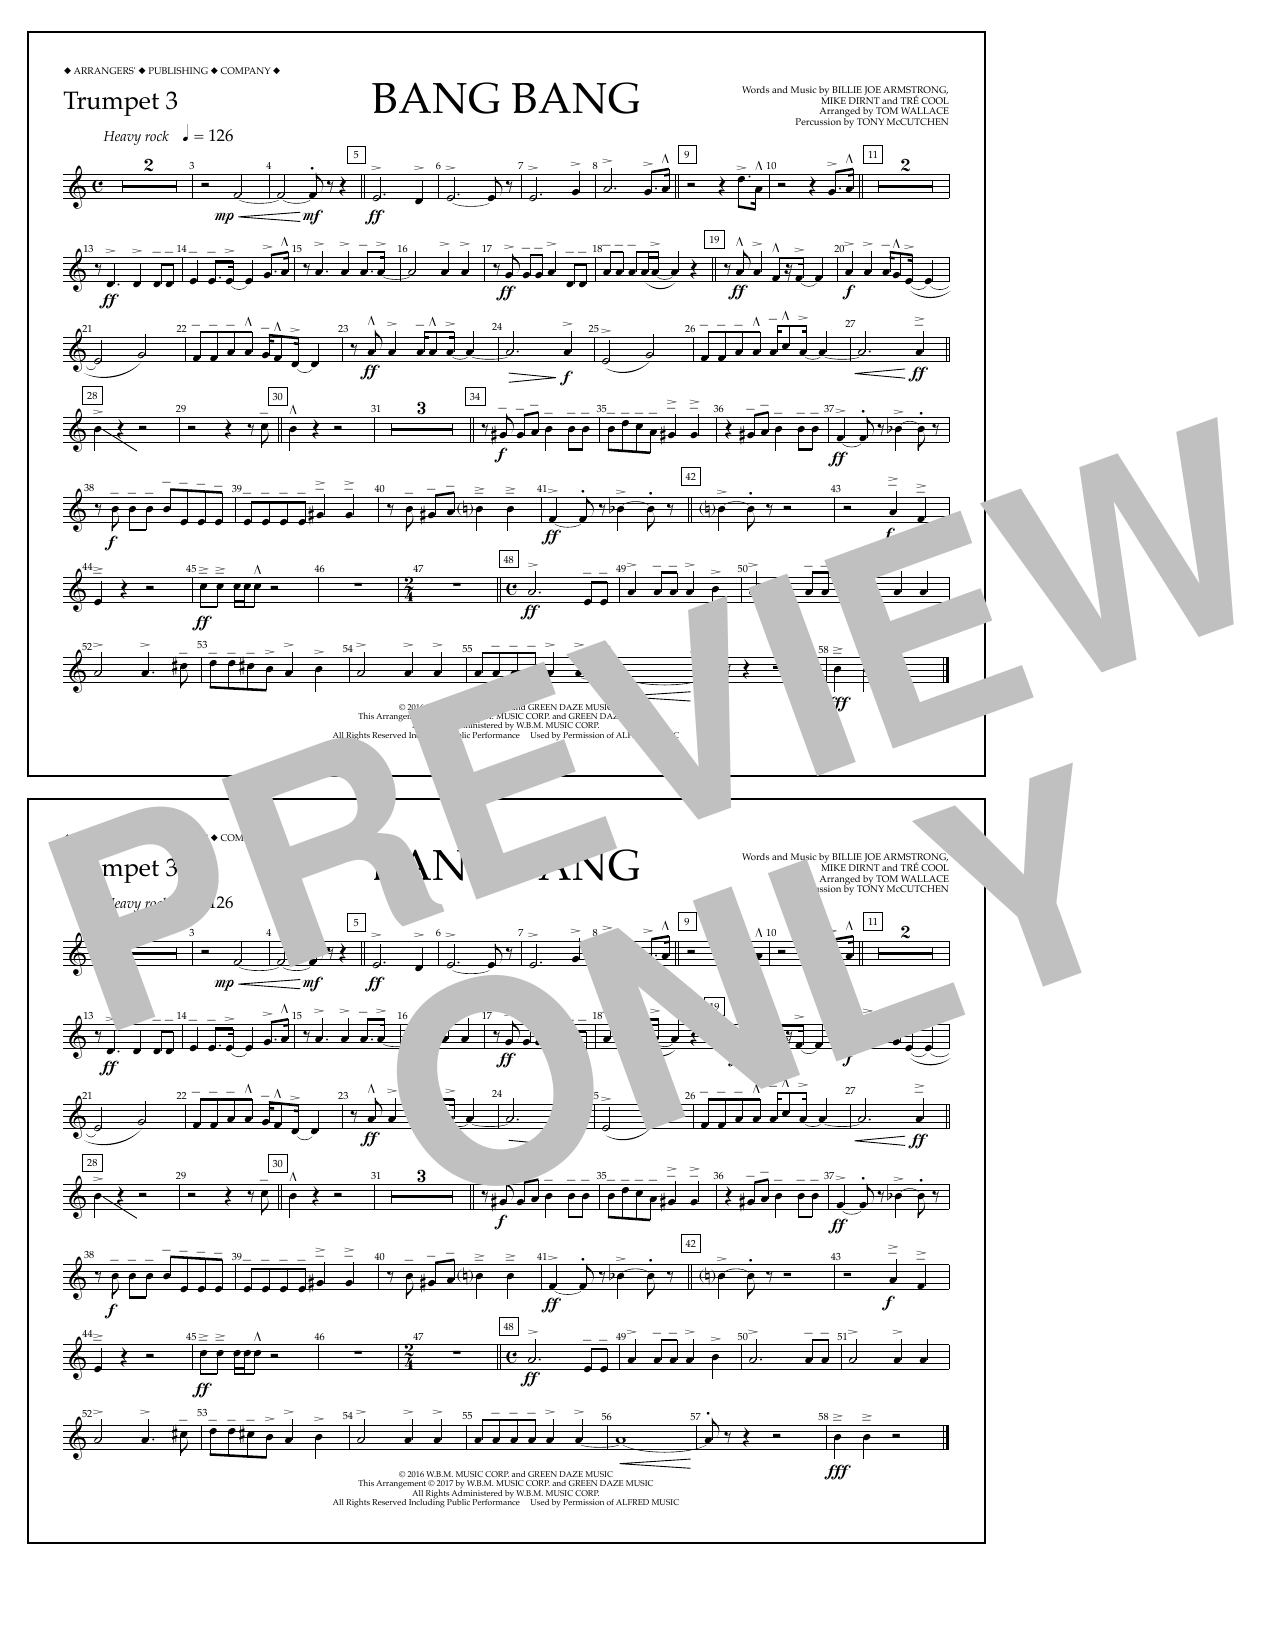 Tom Wallace Bang Bang - Trumpet 3 Sheet Music Notes & Chords for Marching Band - Download or Print PDF